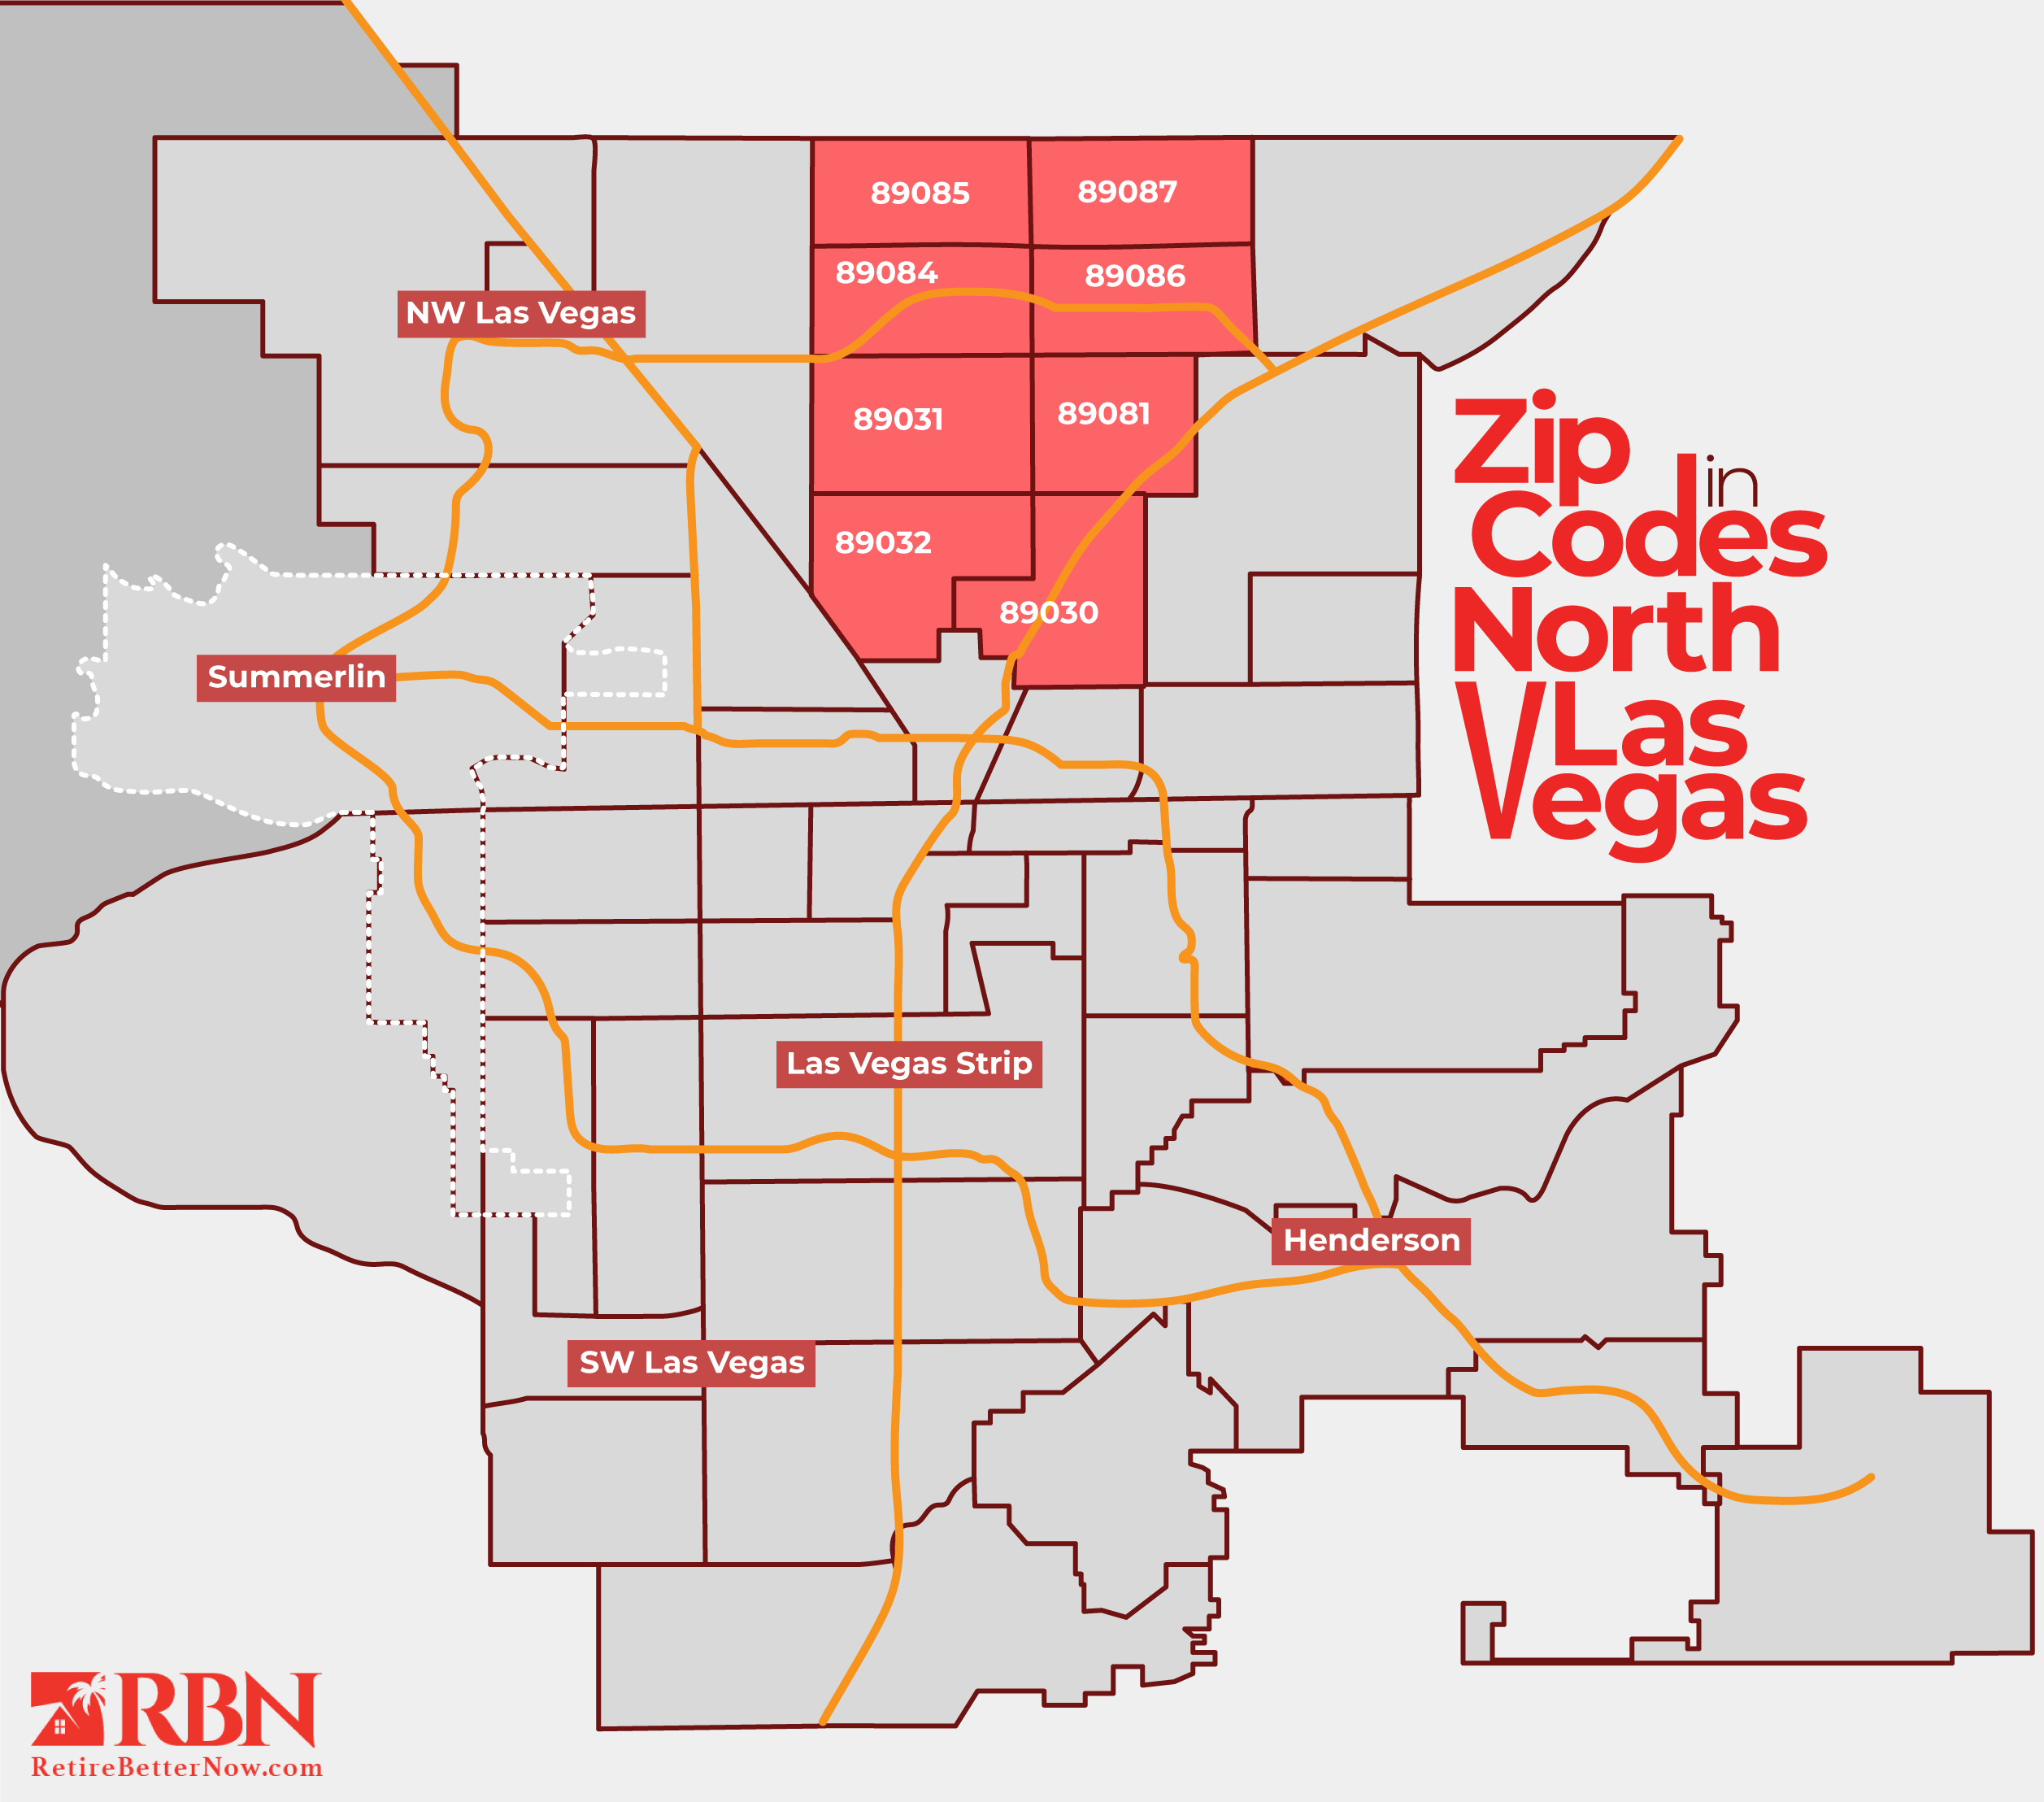 48 Las Vegas Hotel Zip Codes - Easy Interactive Zip Code Map